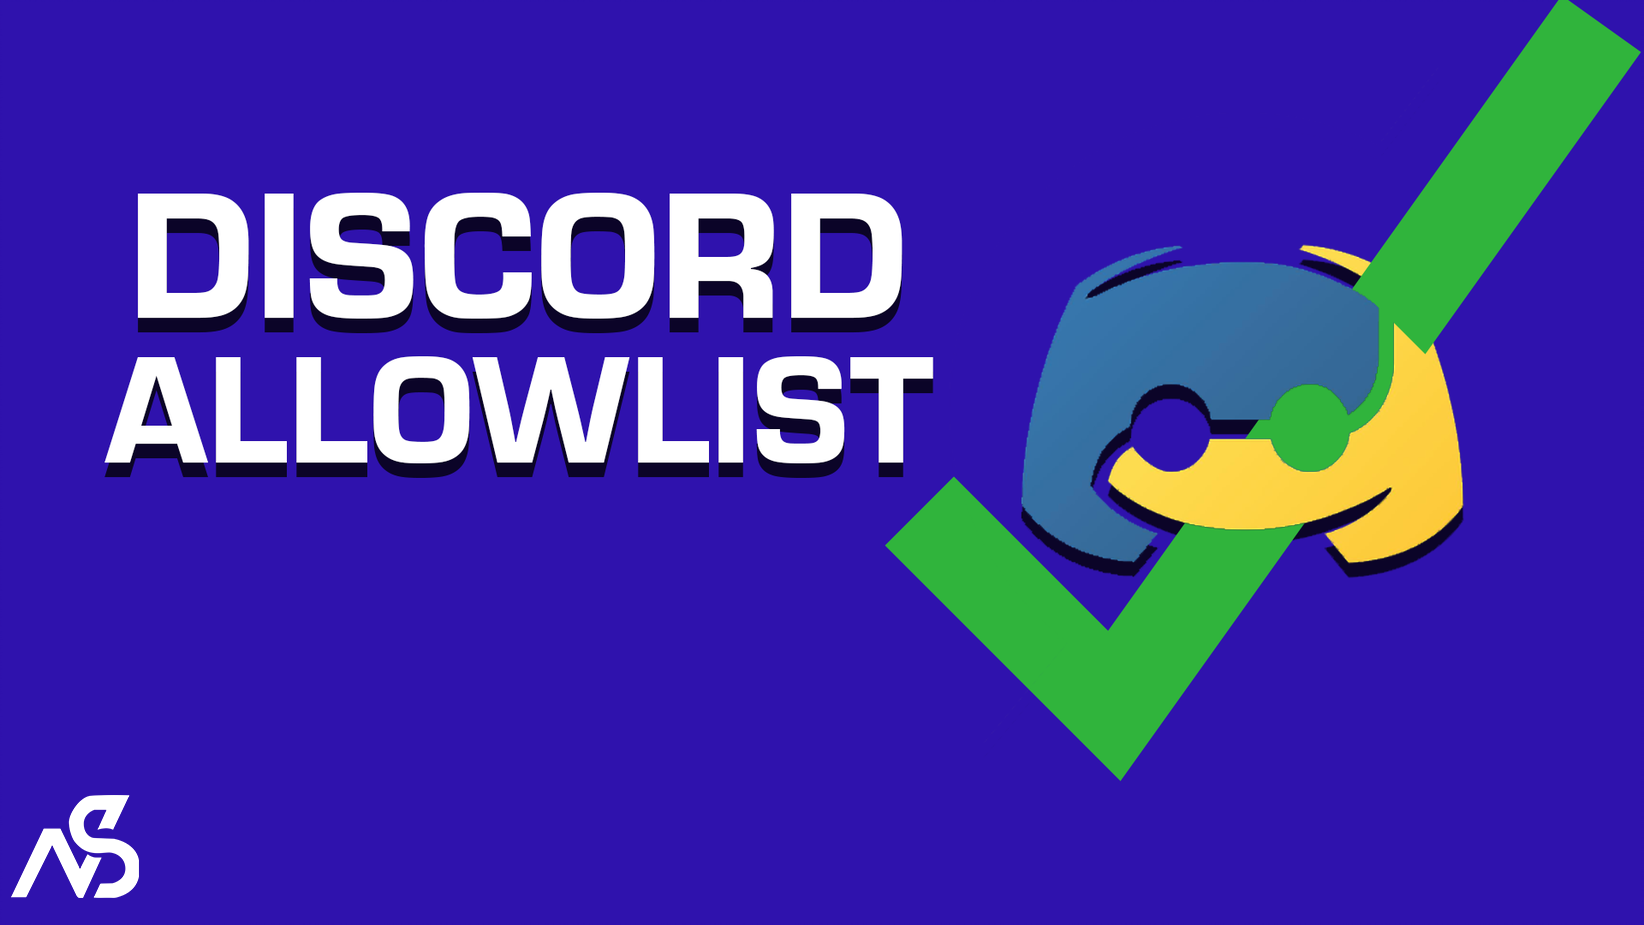 Discord Allowlist! Resource